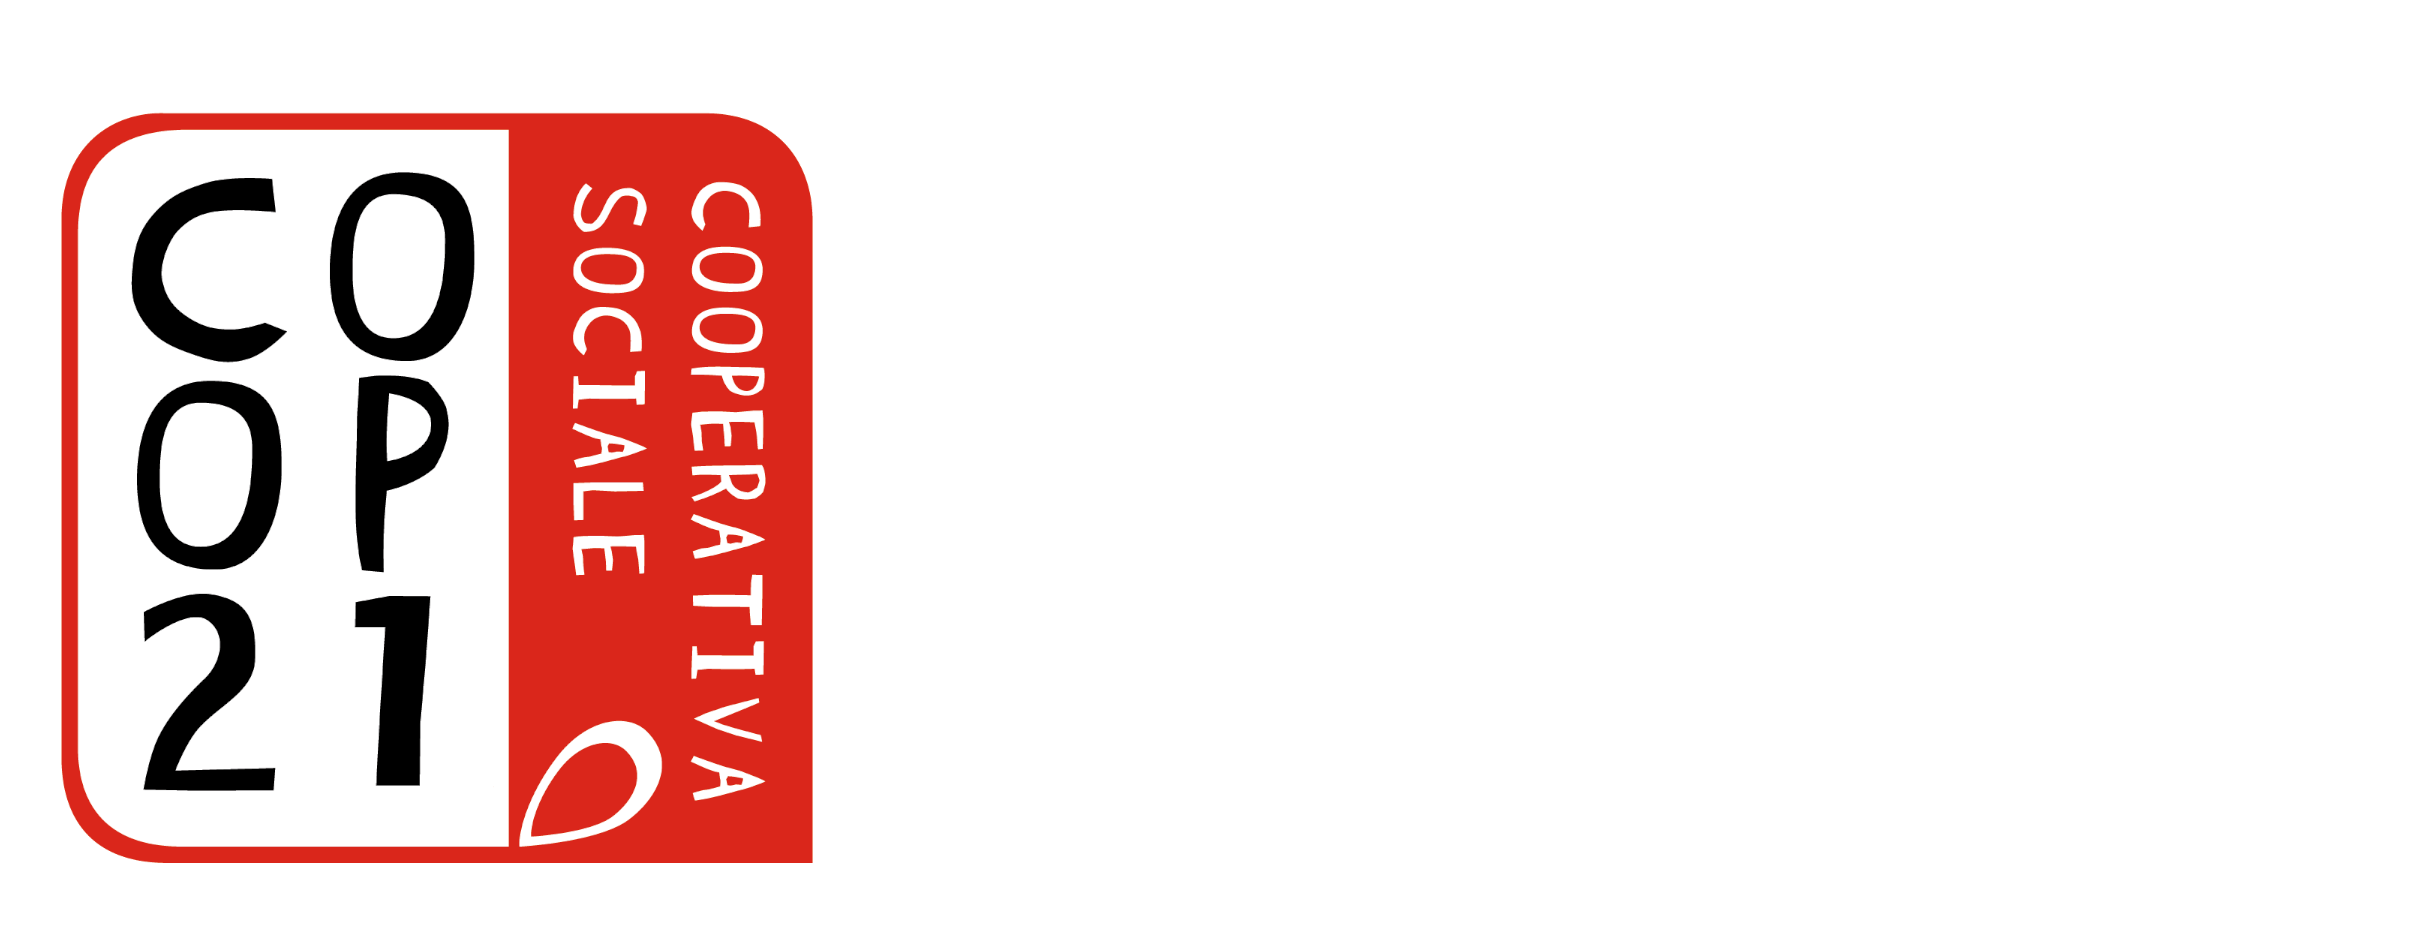 Coop21 Cooperativa Sociale